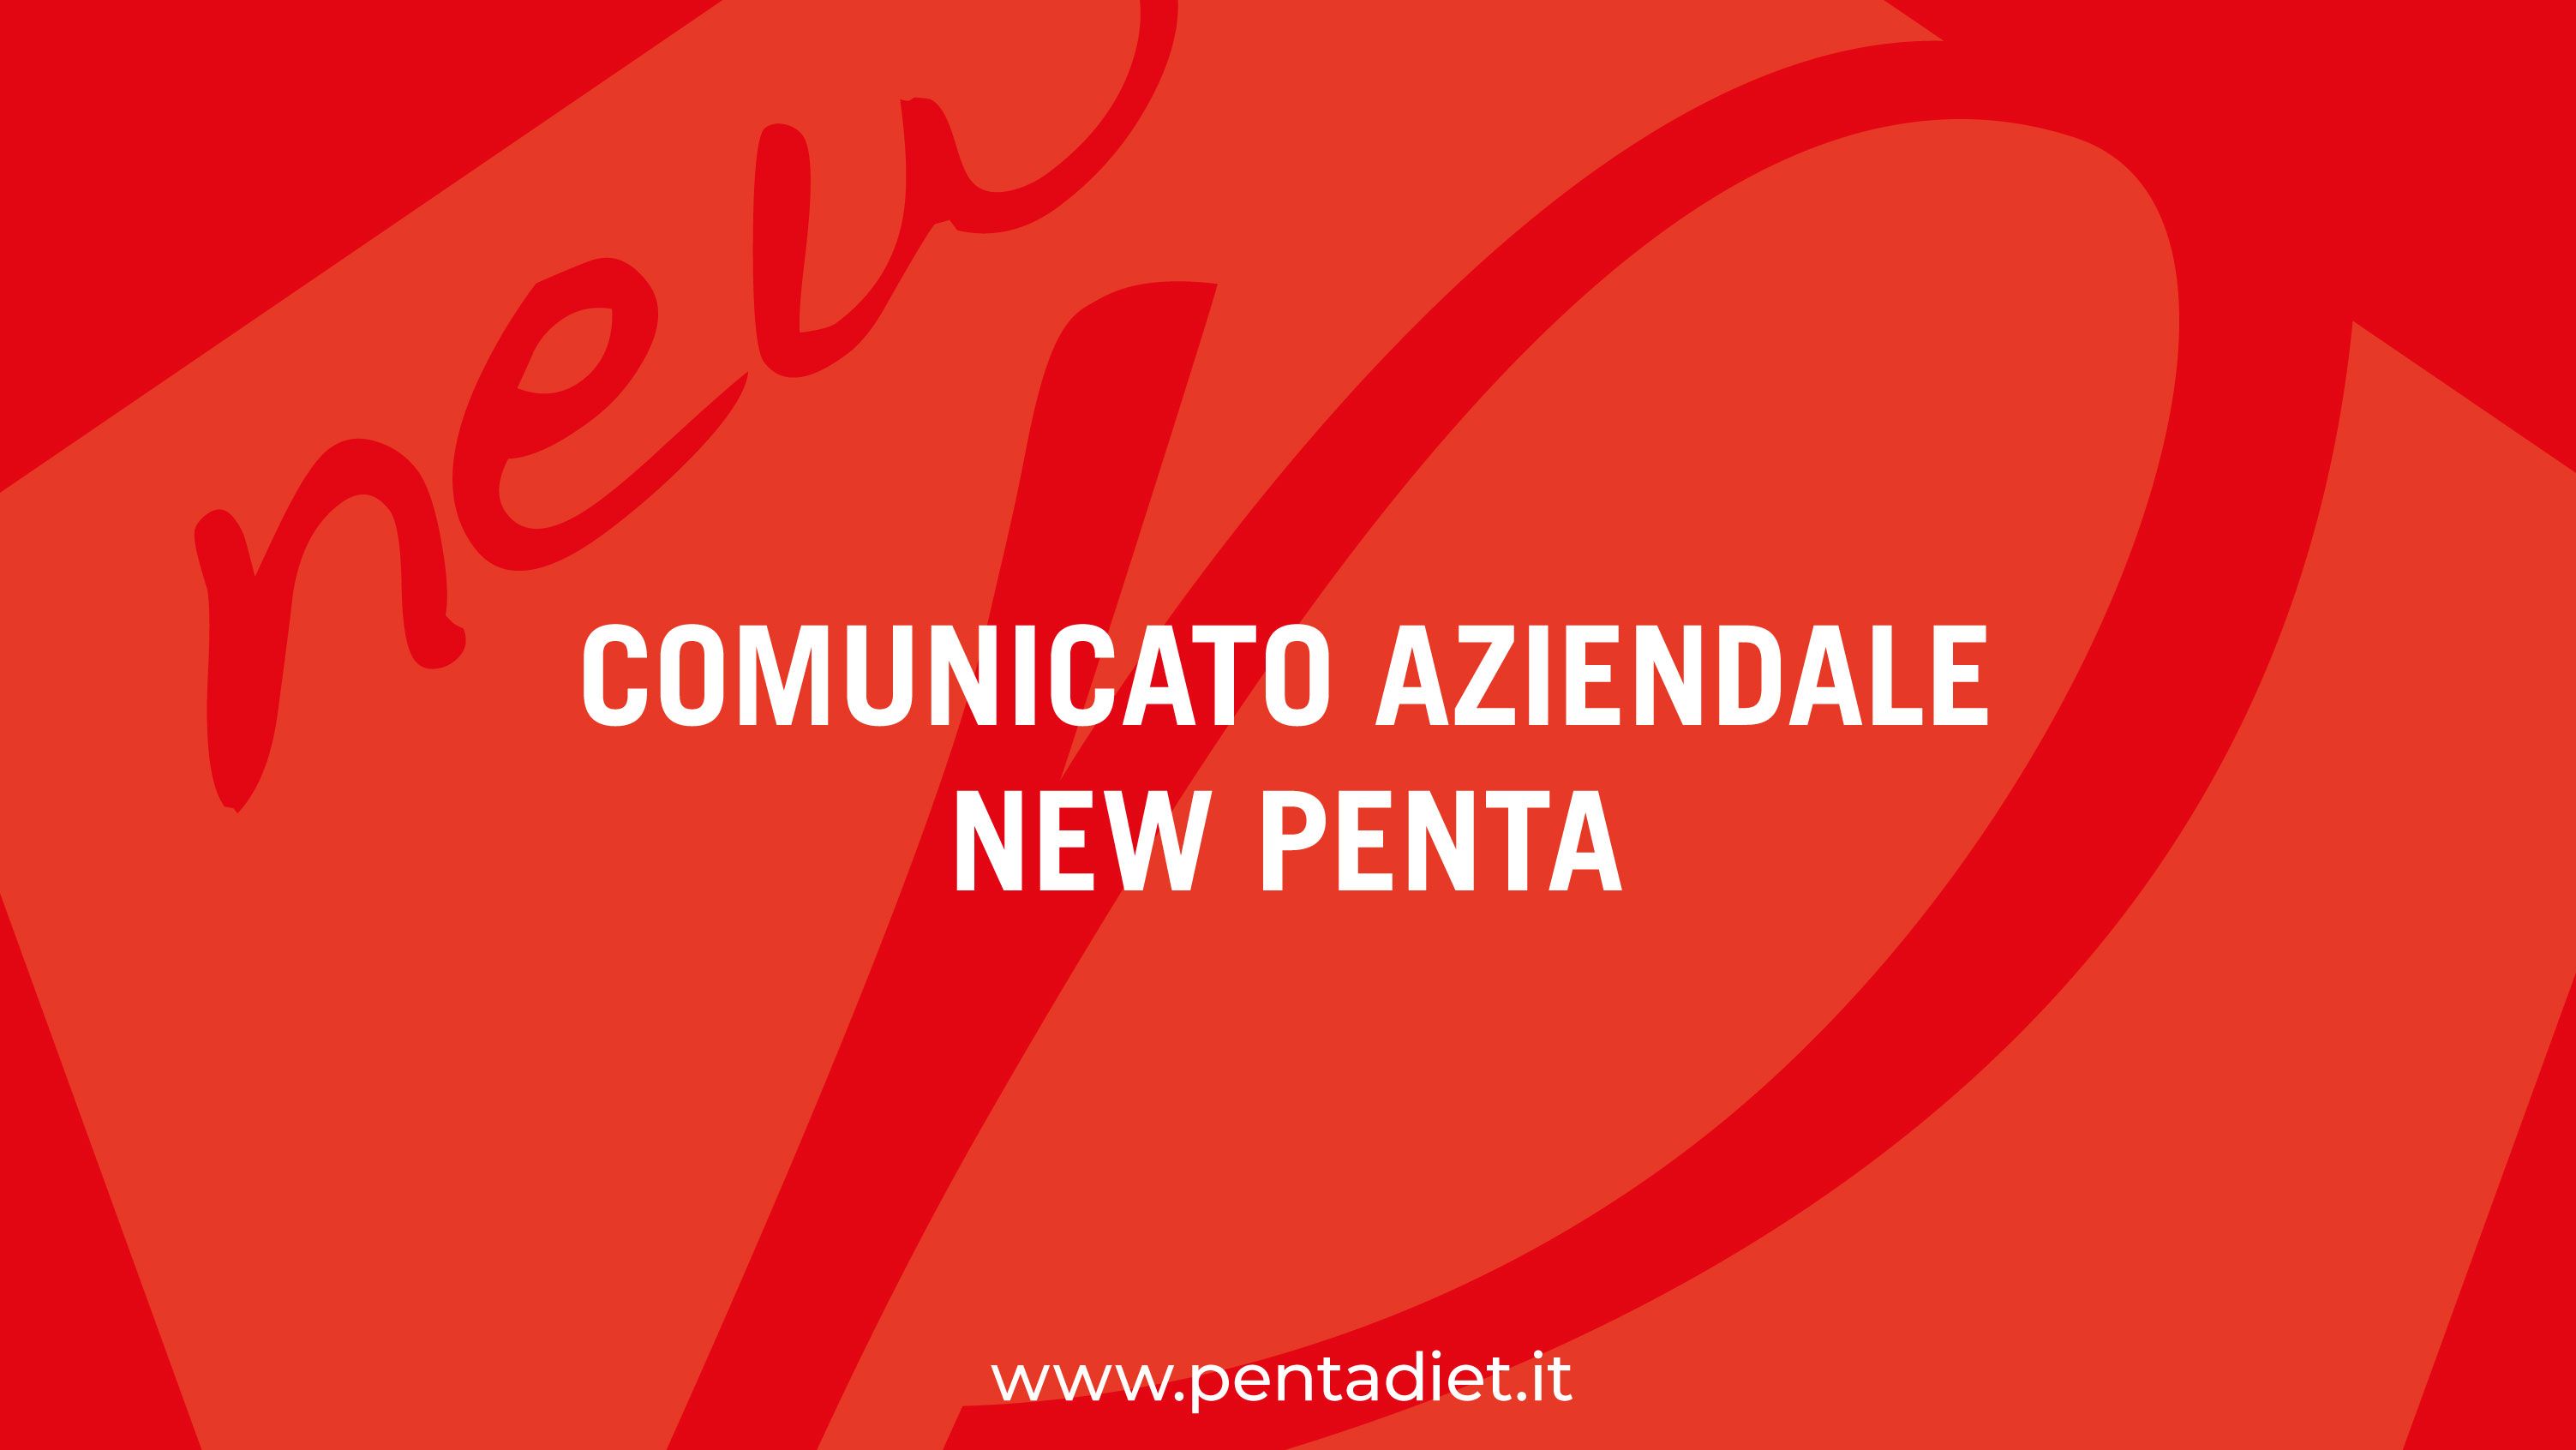 COMUNICATO AZIENDALE NEW PENTA